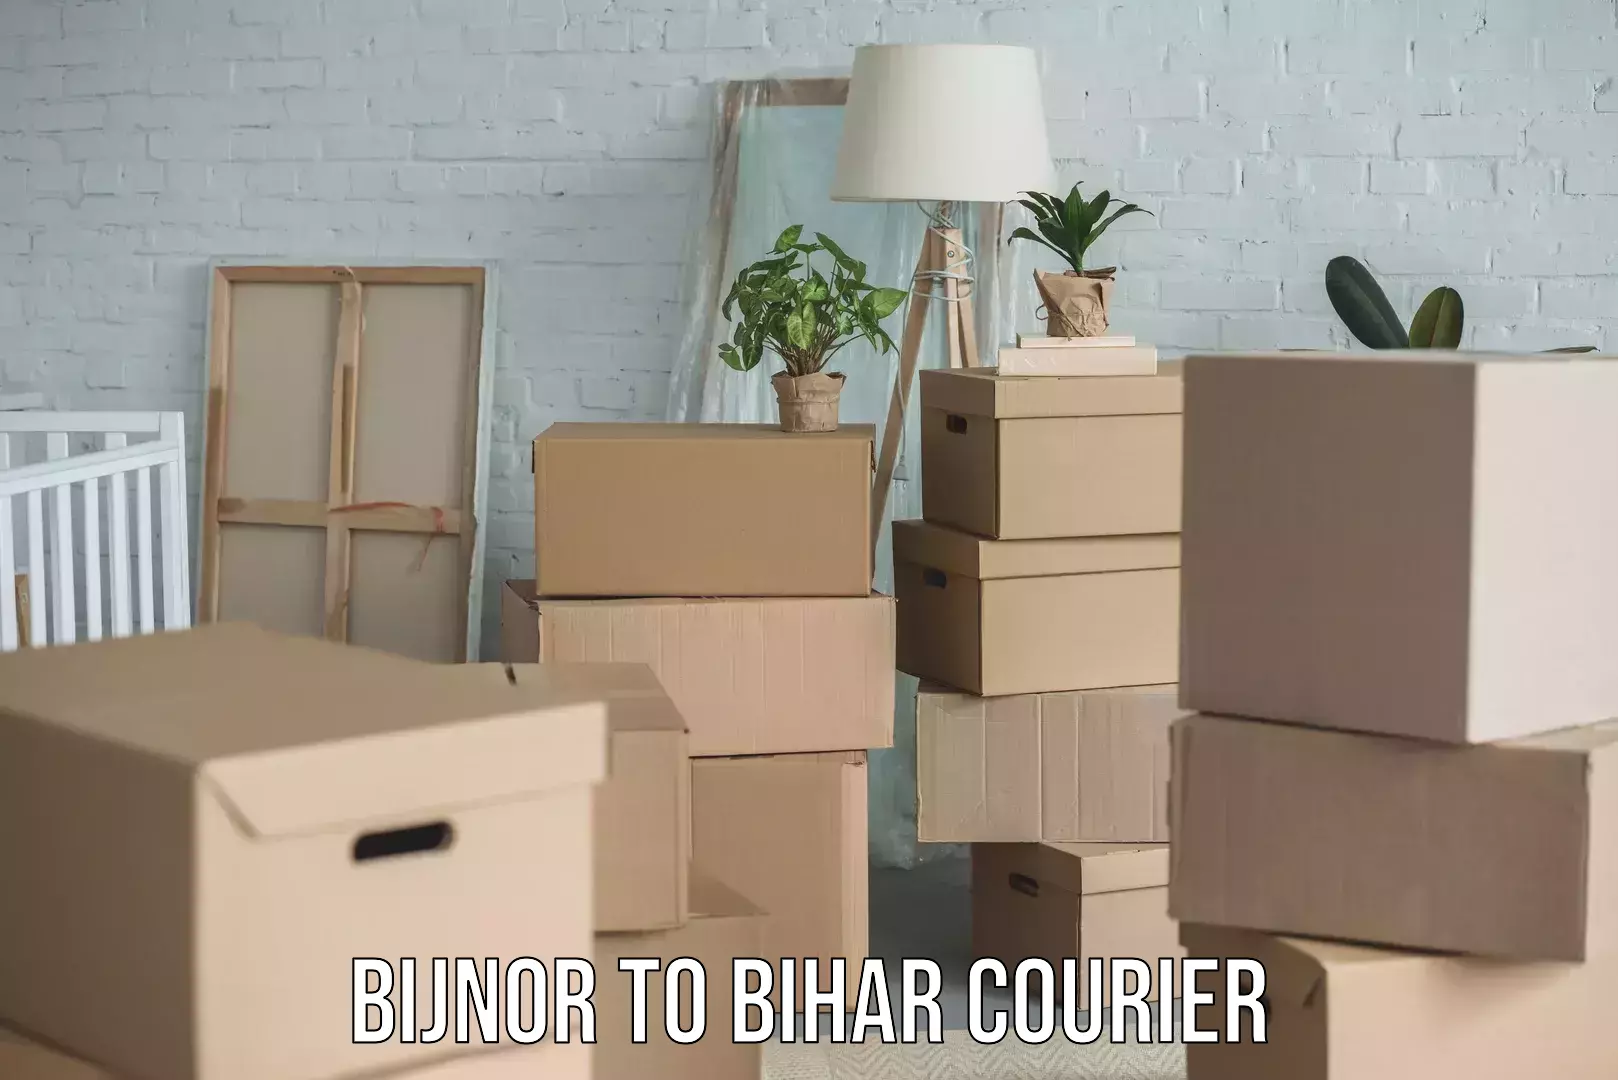 Professional parcel services Bijnor to Bihar